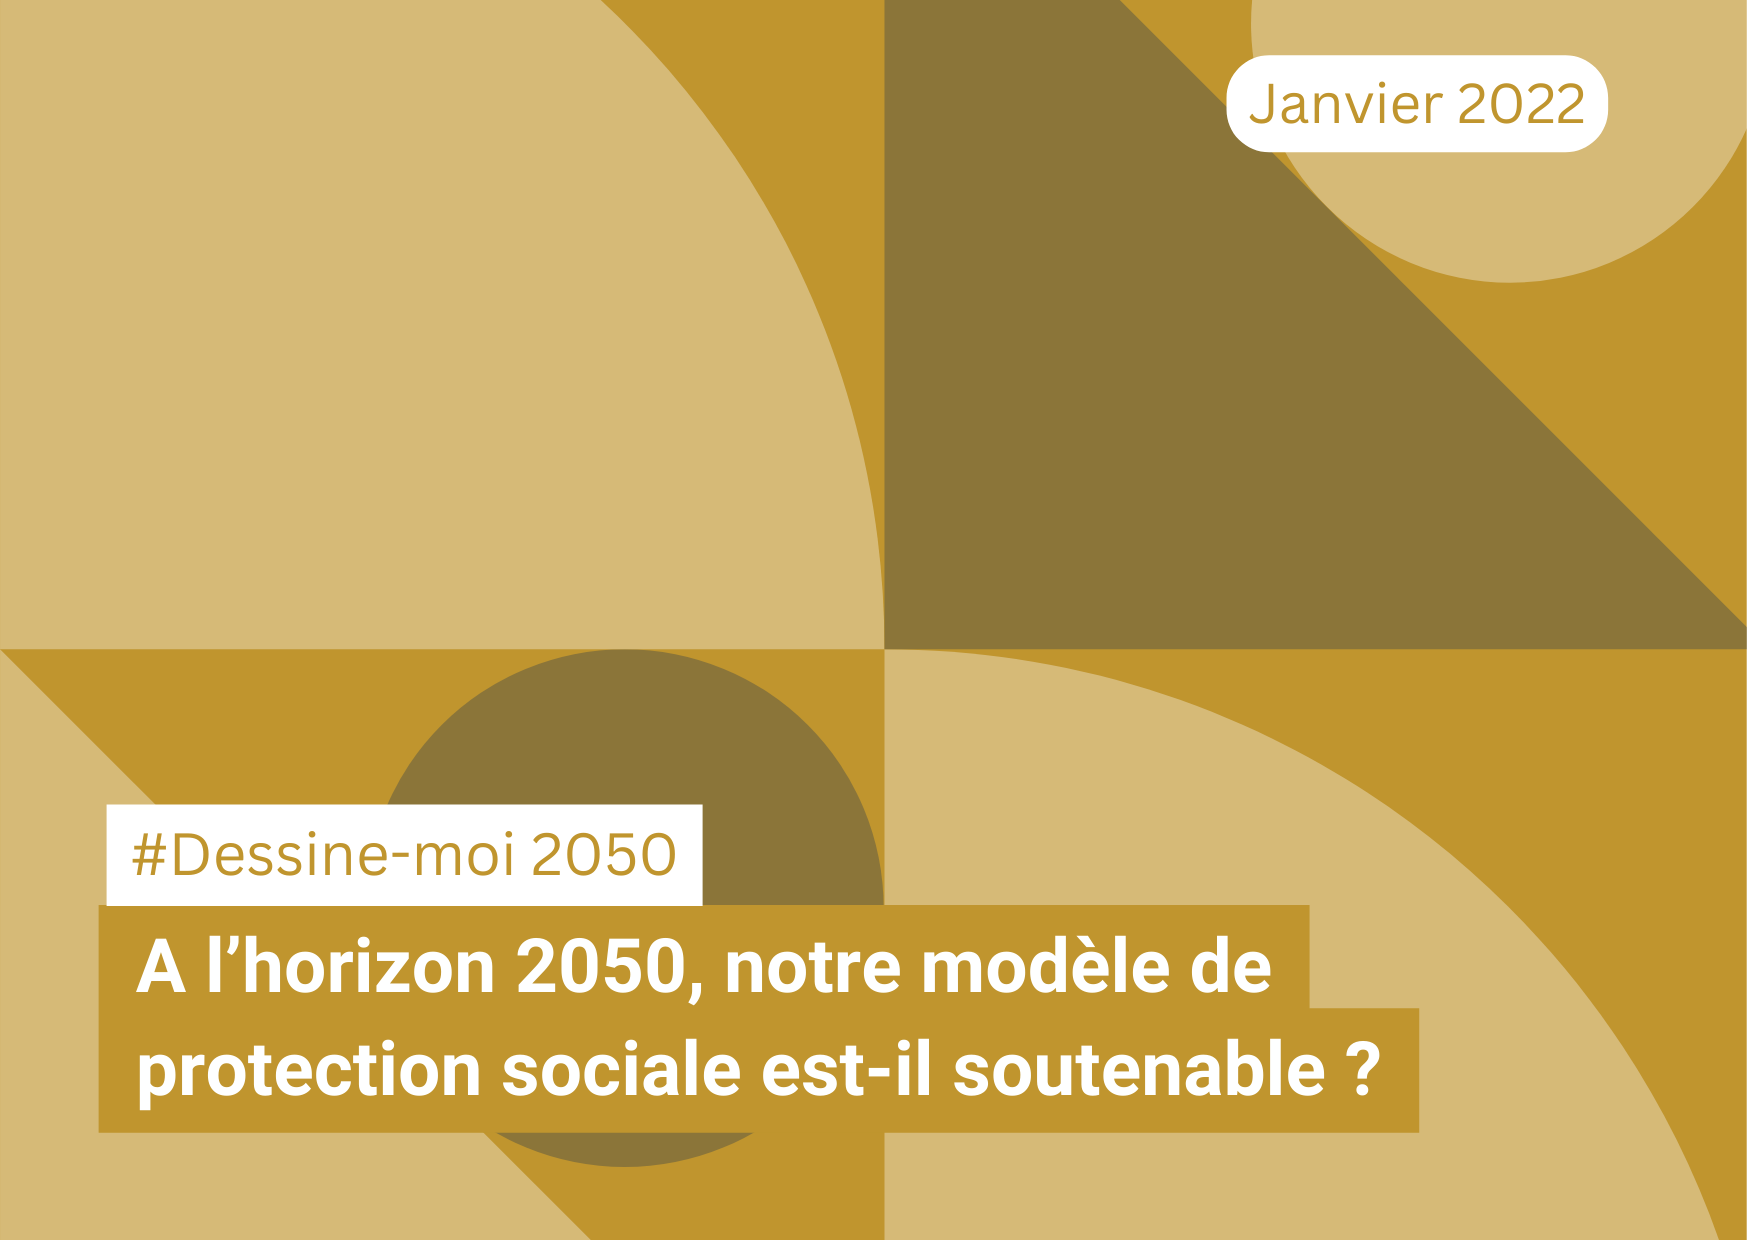 A l’horizon 2050, notre modèle de protection sociale est-il soutenable ? #DessineMoi2050 (19/01/22)